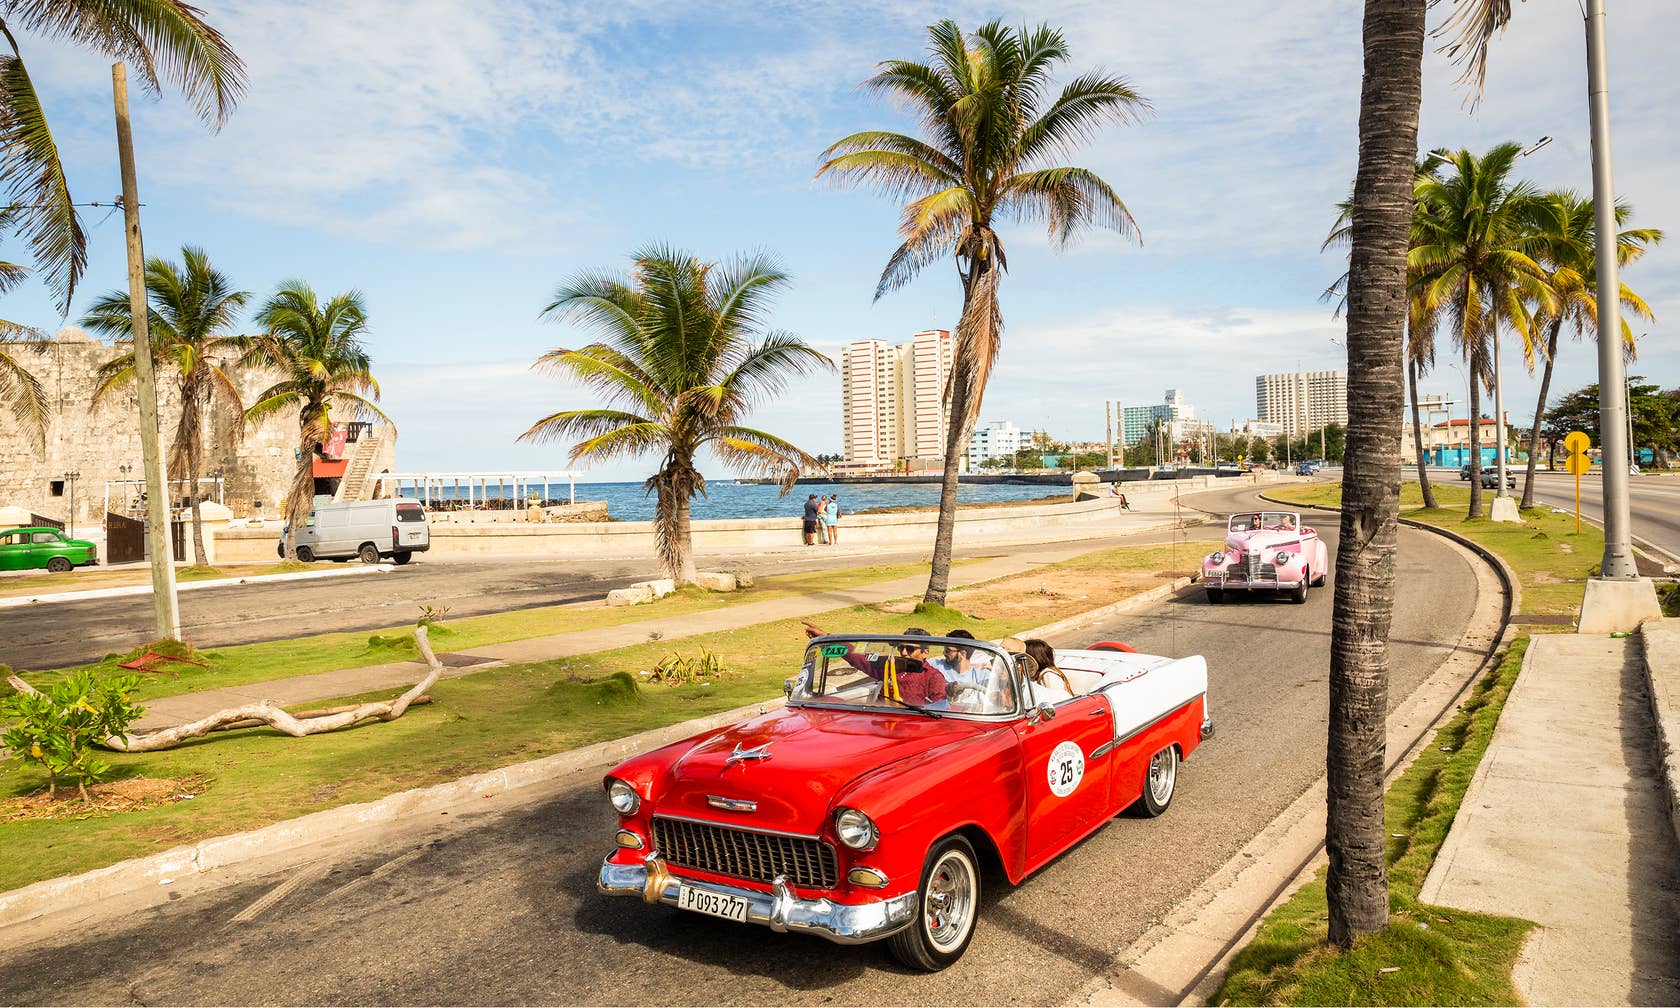 Sewaan percutian di Cuba